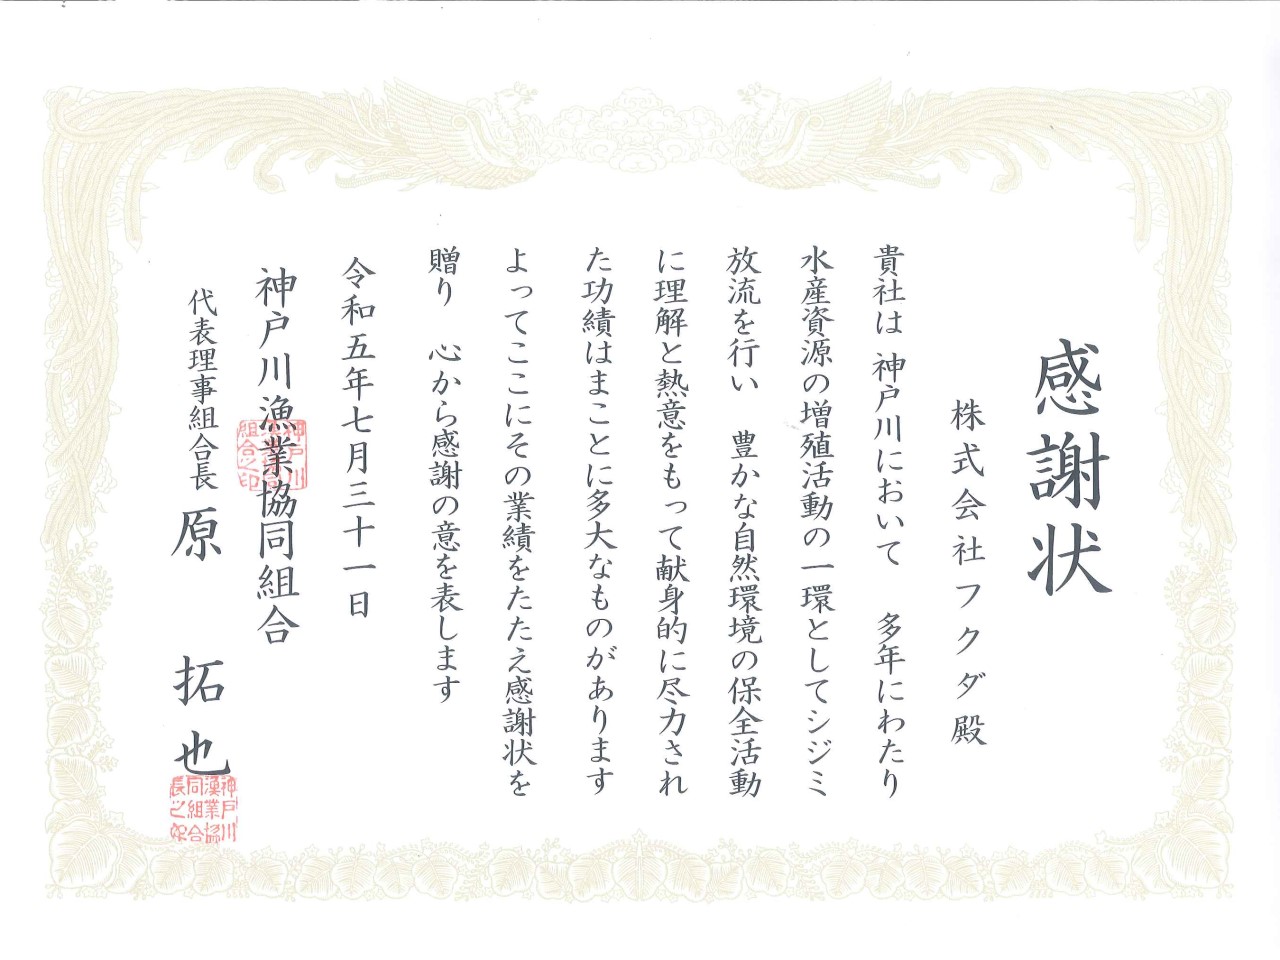 神戸川漁業協同組合様から感謝状をいただきました。